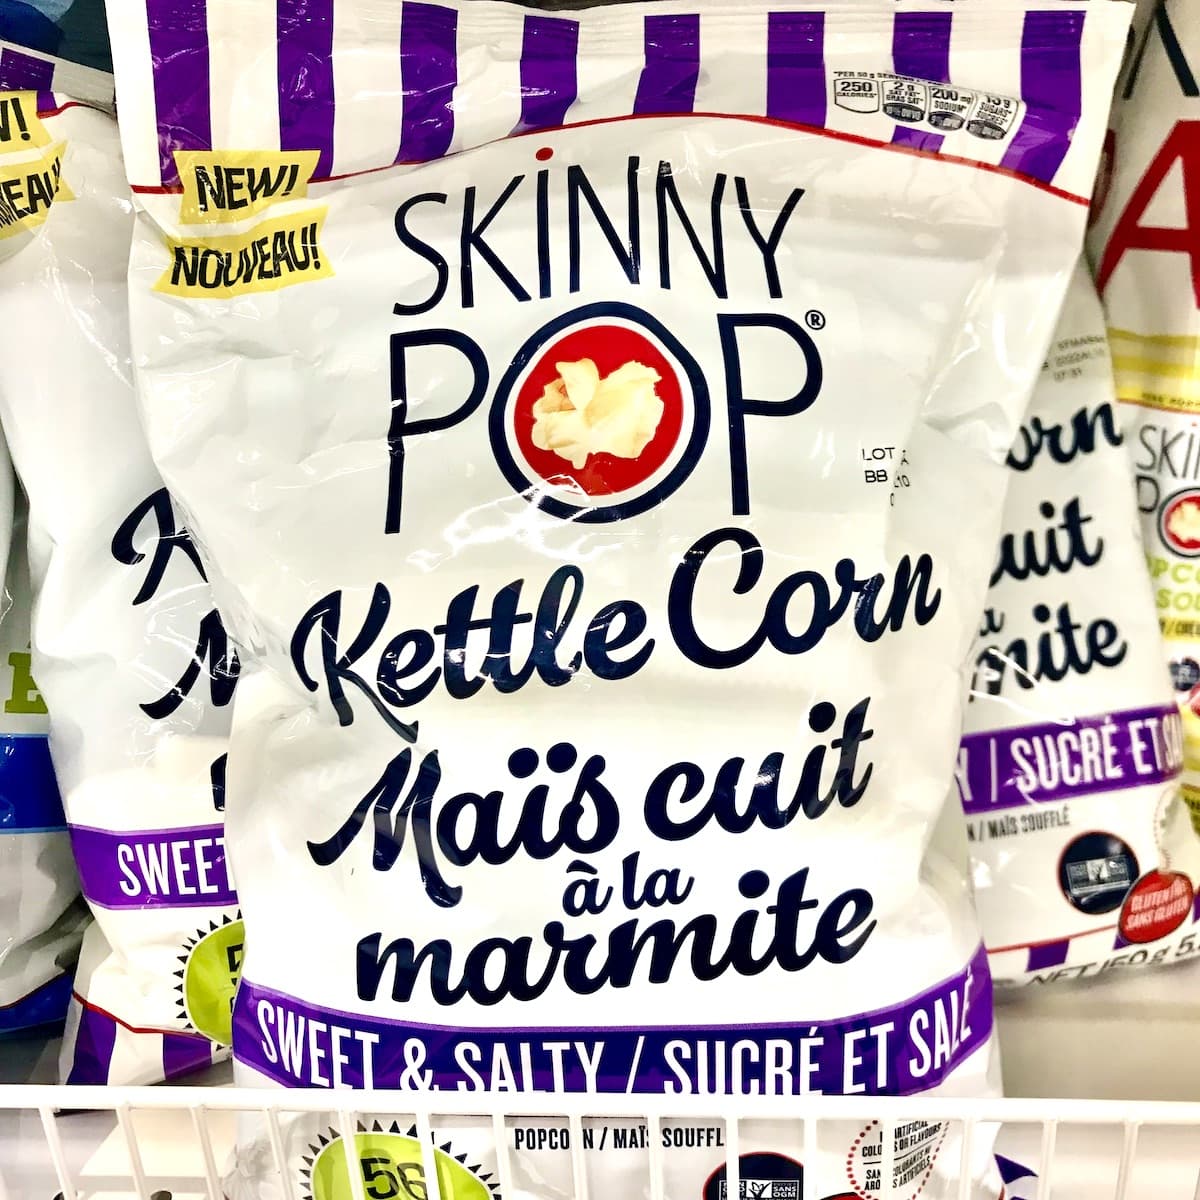 A bag of vegan SkinnyPop Kettle Corn.